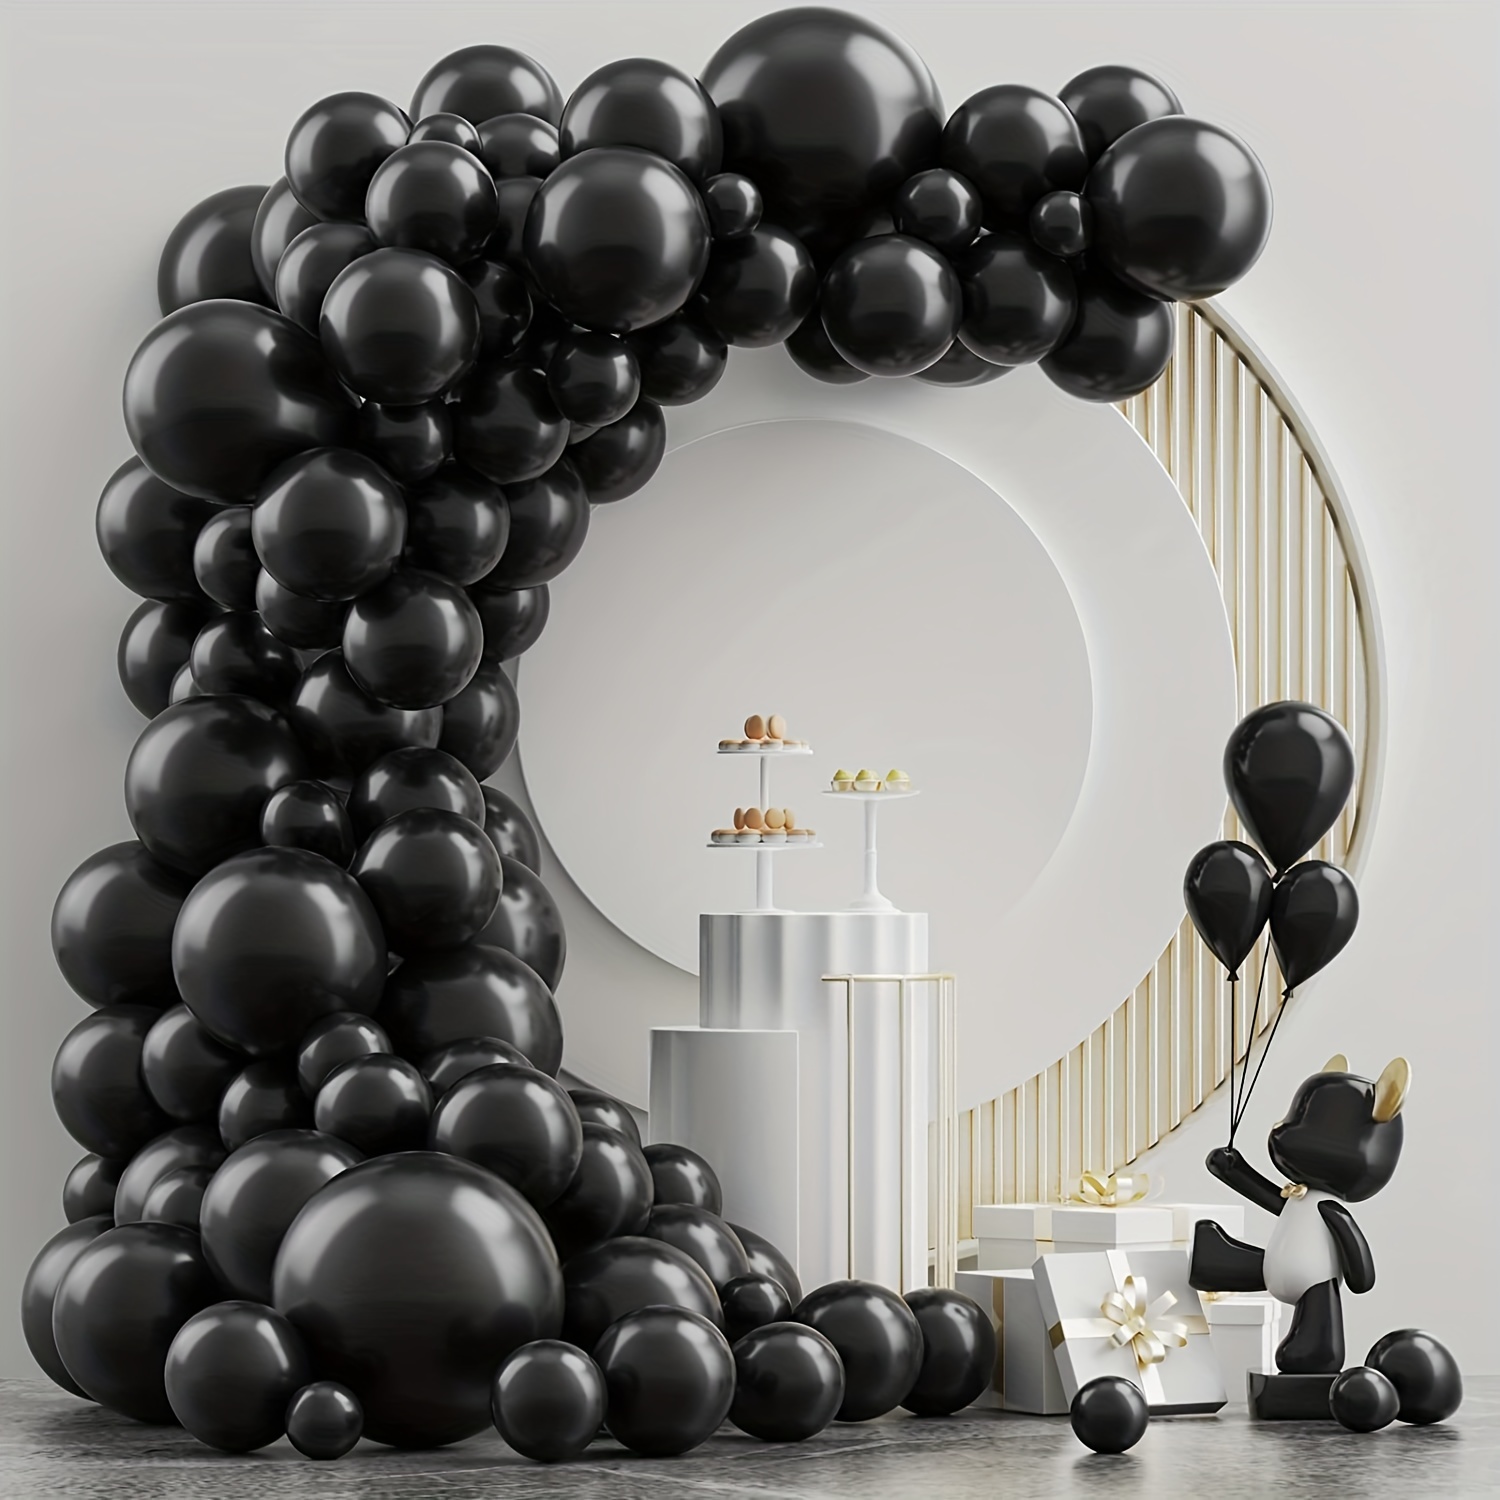 Juego de 120 globos negros y dorados, confeti metálico negro y dorado,  globos de látex, kit de guirnalda para cumpleaños, graduación, boda